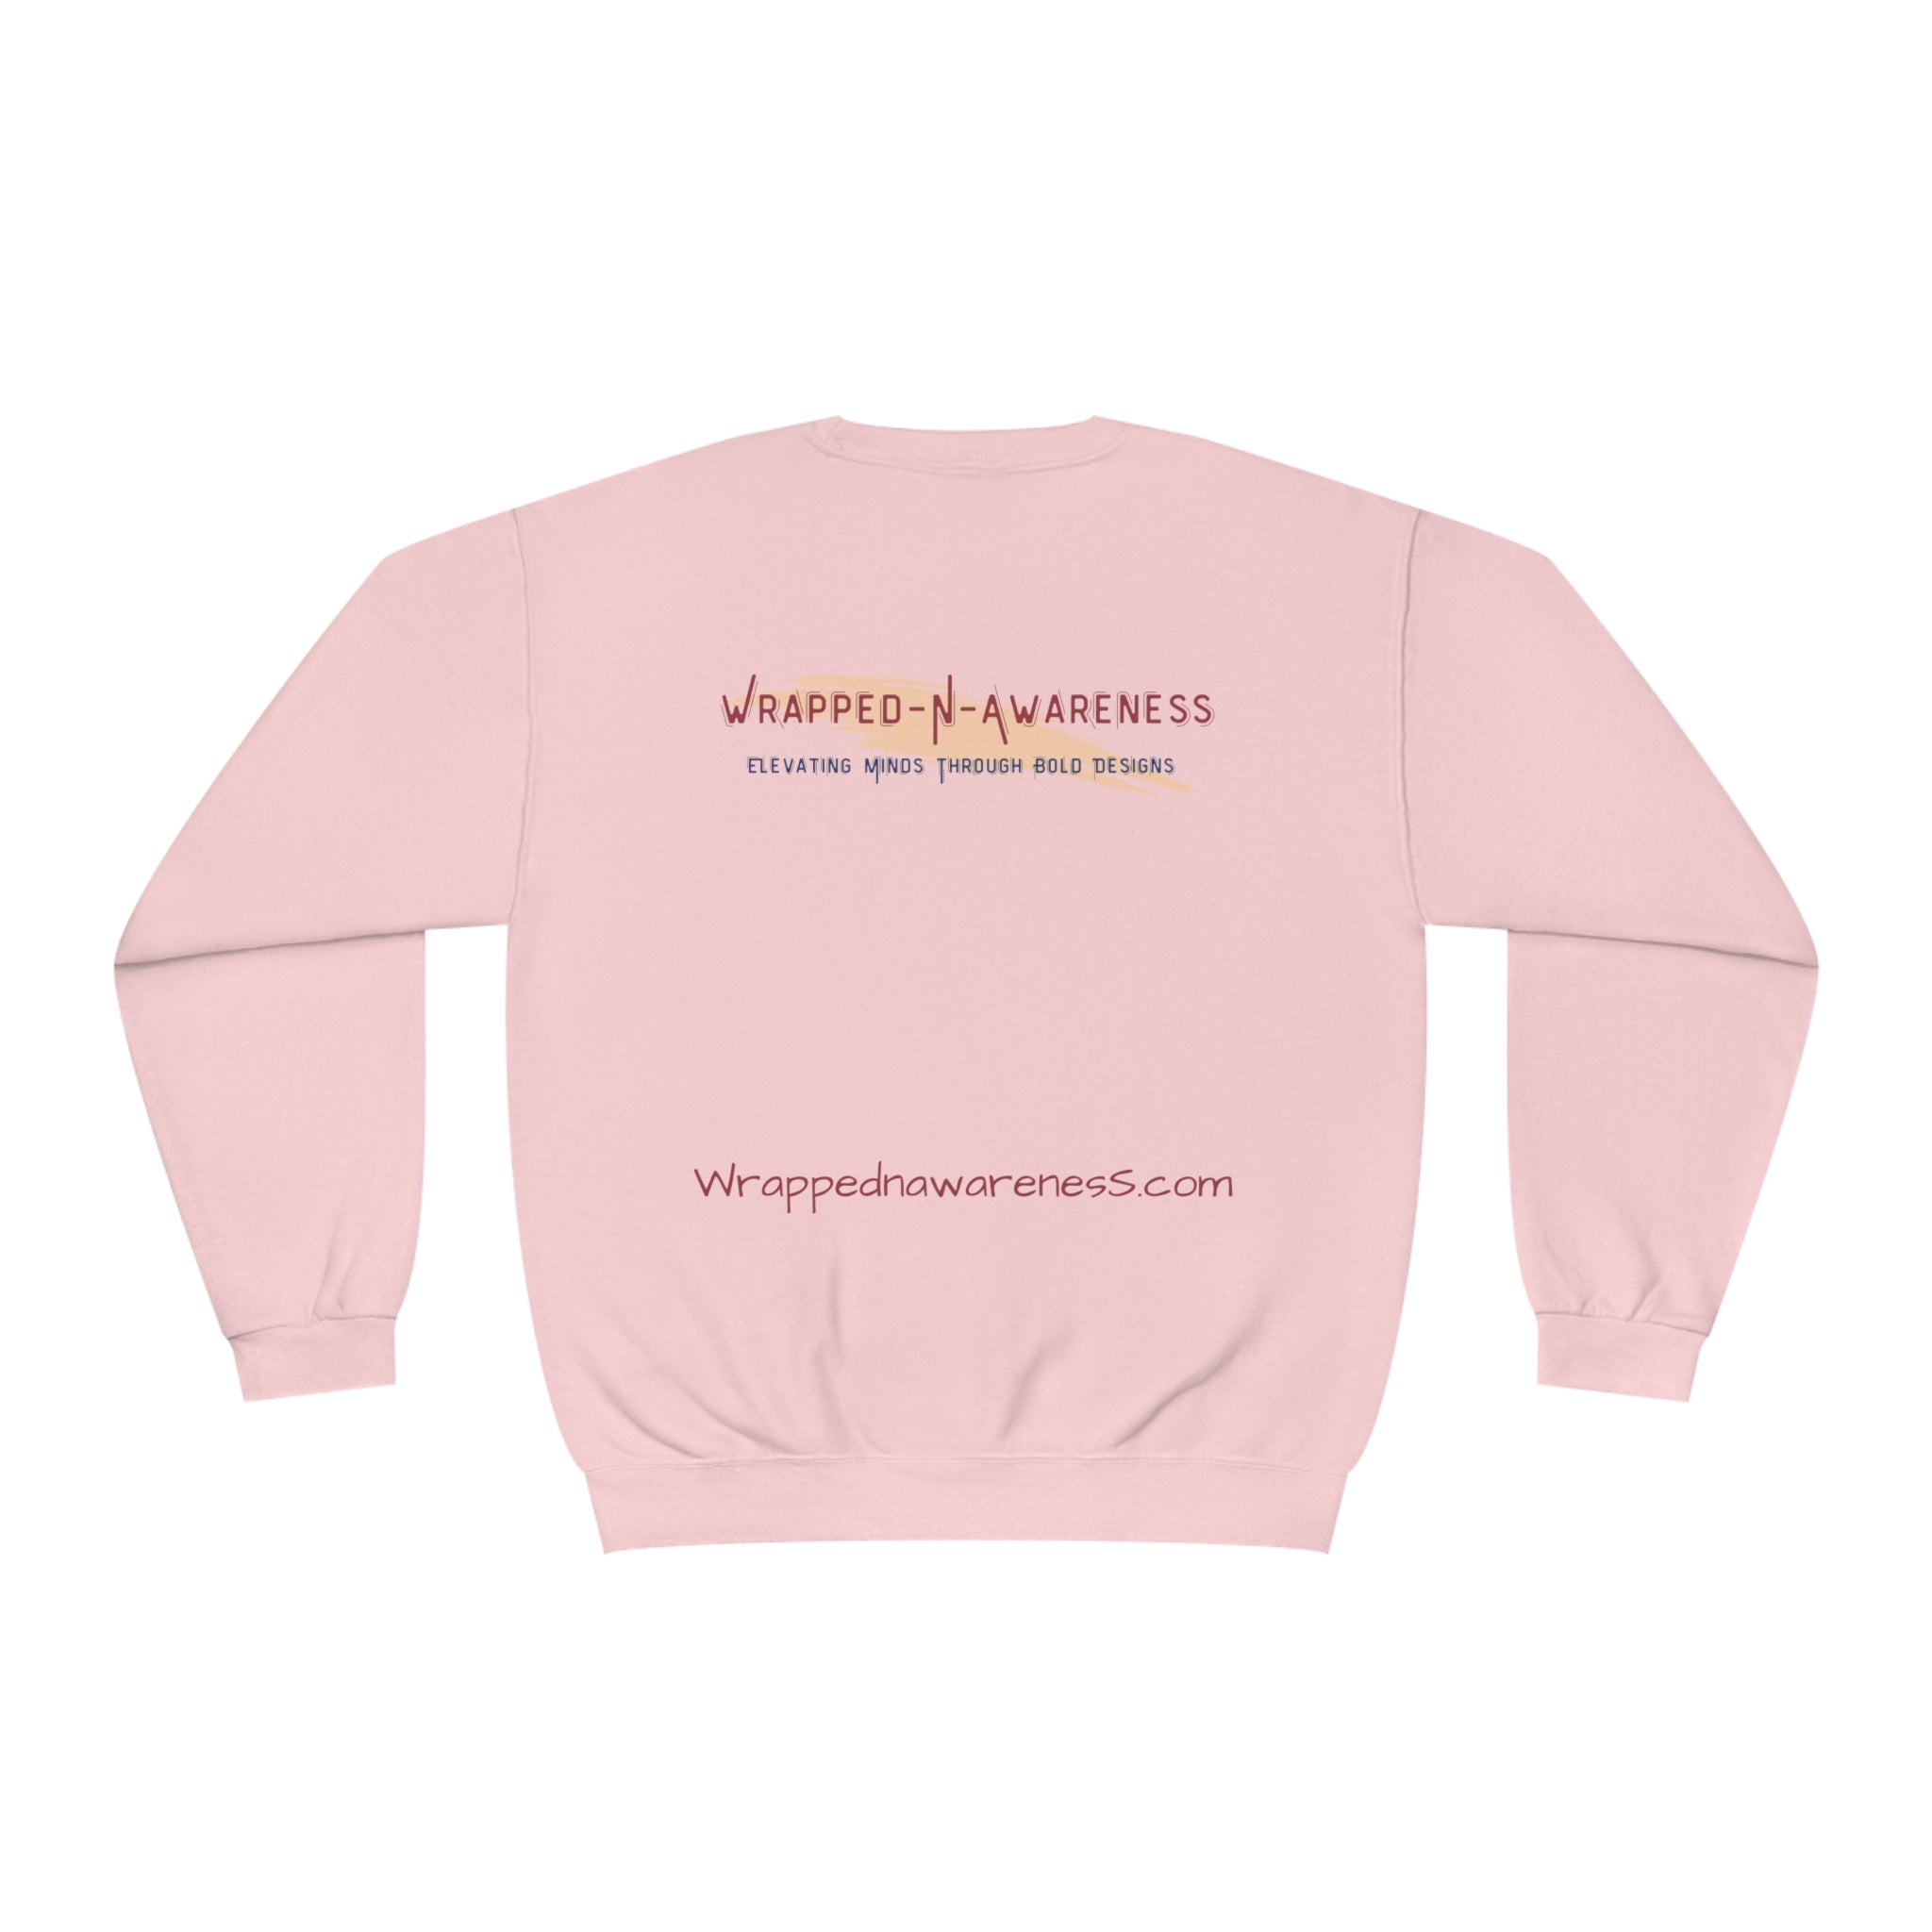 I Embrace Growth Fleece Sweatshirt: Comfort & Style Sandstone Comfy Sweater Cozy Sweatshirt Crewneck Sweatshirt Fleece Pullover Graphic Sweatshirt Men's Sweatshirt Streatwear Sweatshirt Warm Outerwear Women's Sweatshirt Sweatshirt 4545201348711590873_2048 Printify